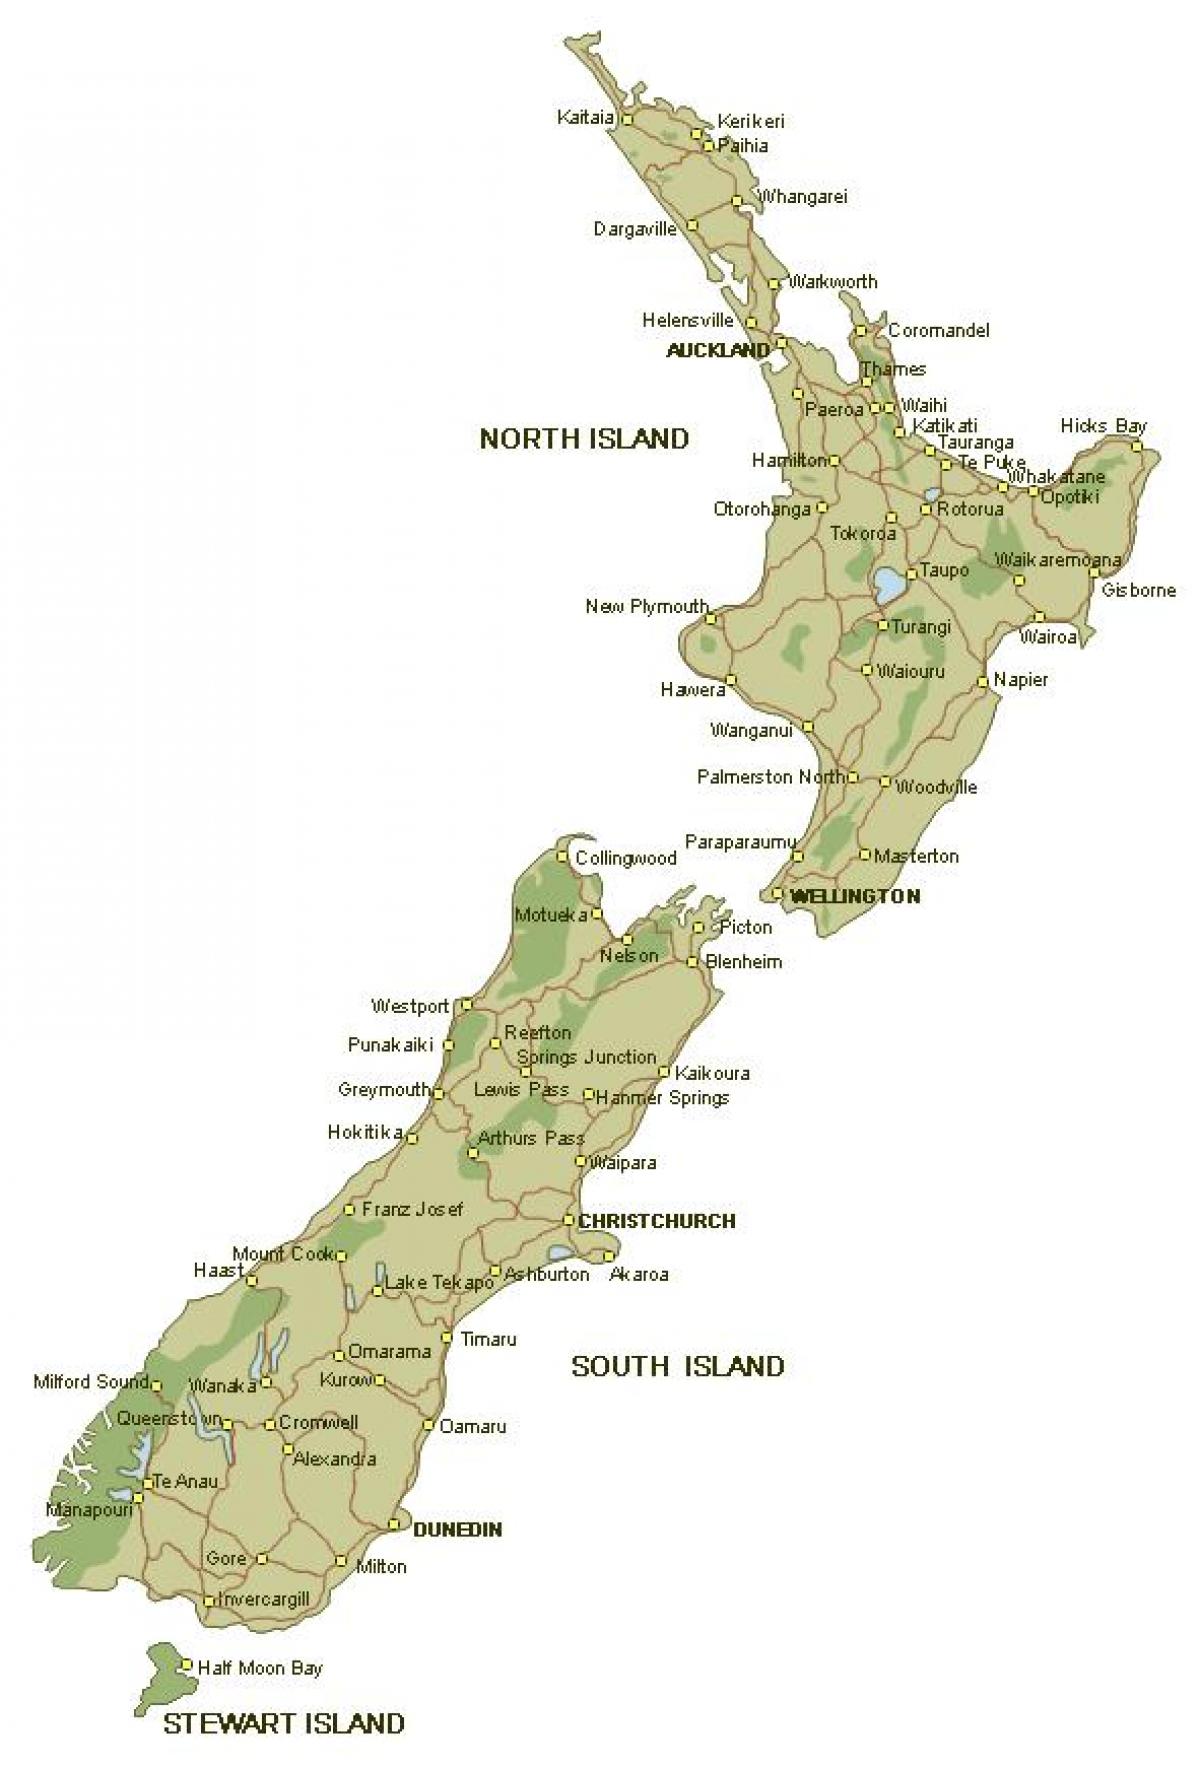 Mapa detalhado da nova zelândia